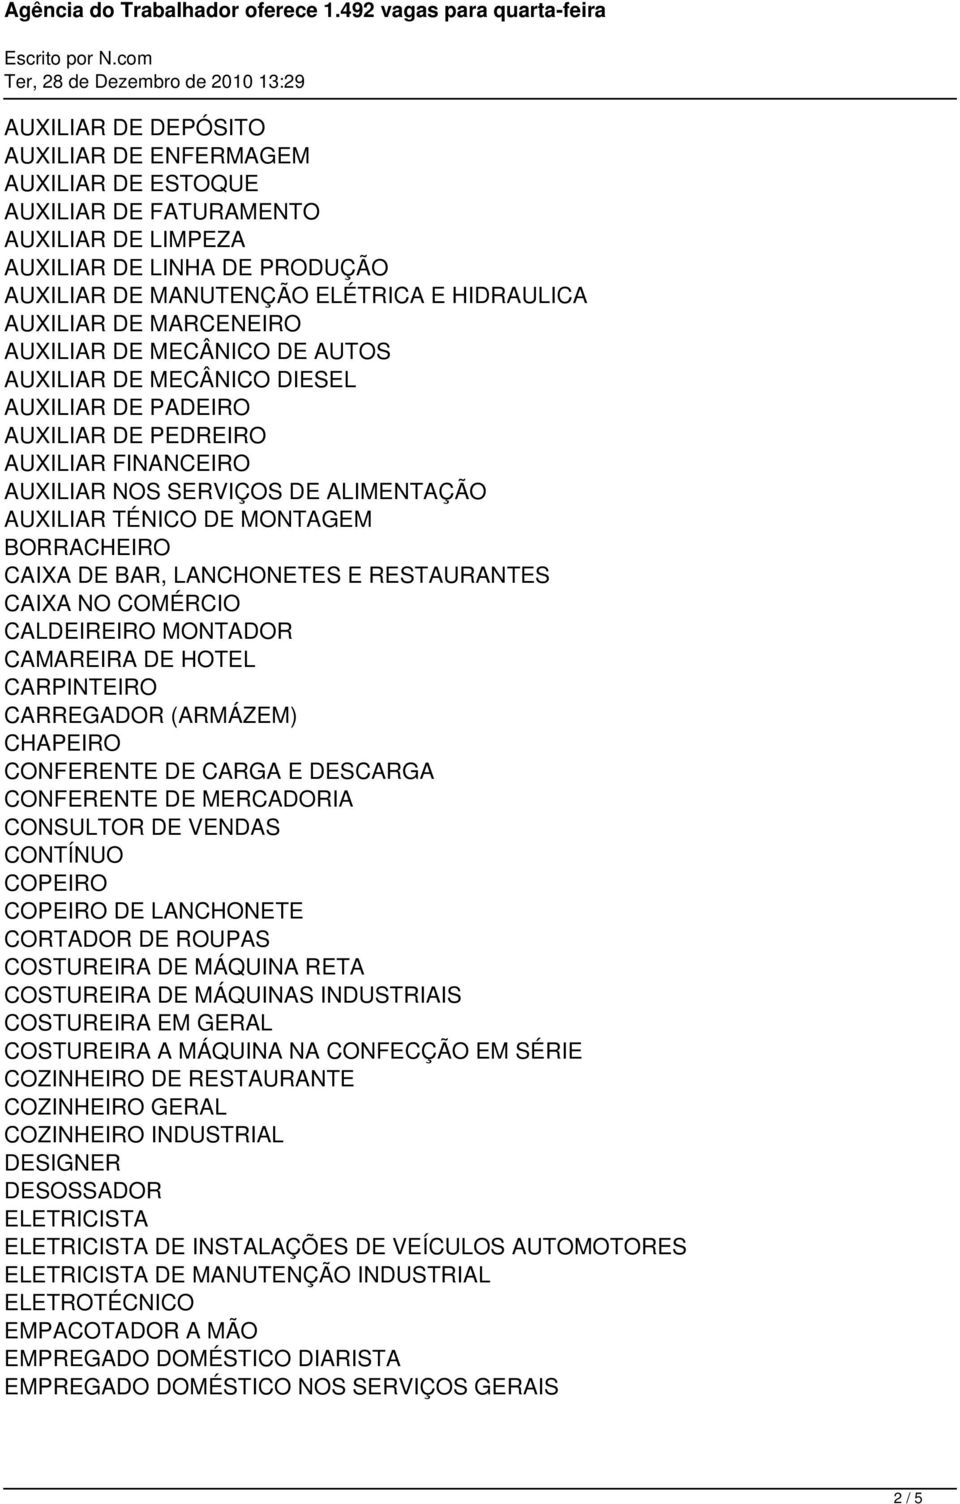 BORRACHEIRO CAIXA DE BAR, LANCHONETES E RESTAURANTES CAIXA NO COMÉRCIO CALDEIREIRO MONTADOR CAMAREIRA DE HOTEL CARPINTEIRO CARREGADOR (ARMÁZEM) CHAPEIRO CONFERENTE DE CARGA E DESCARGA CONFERENTE DE